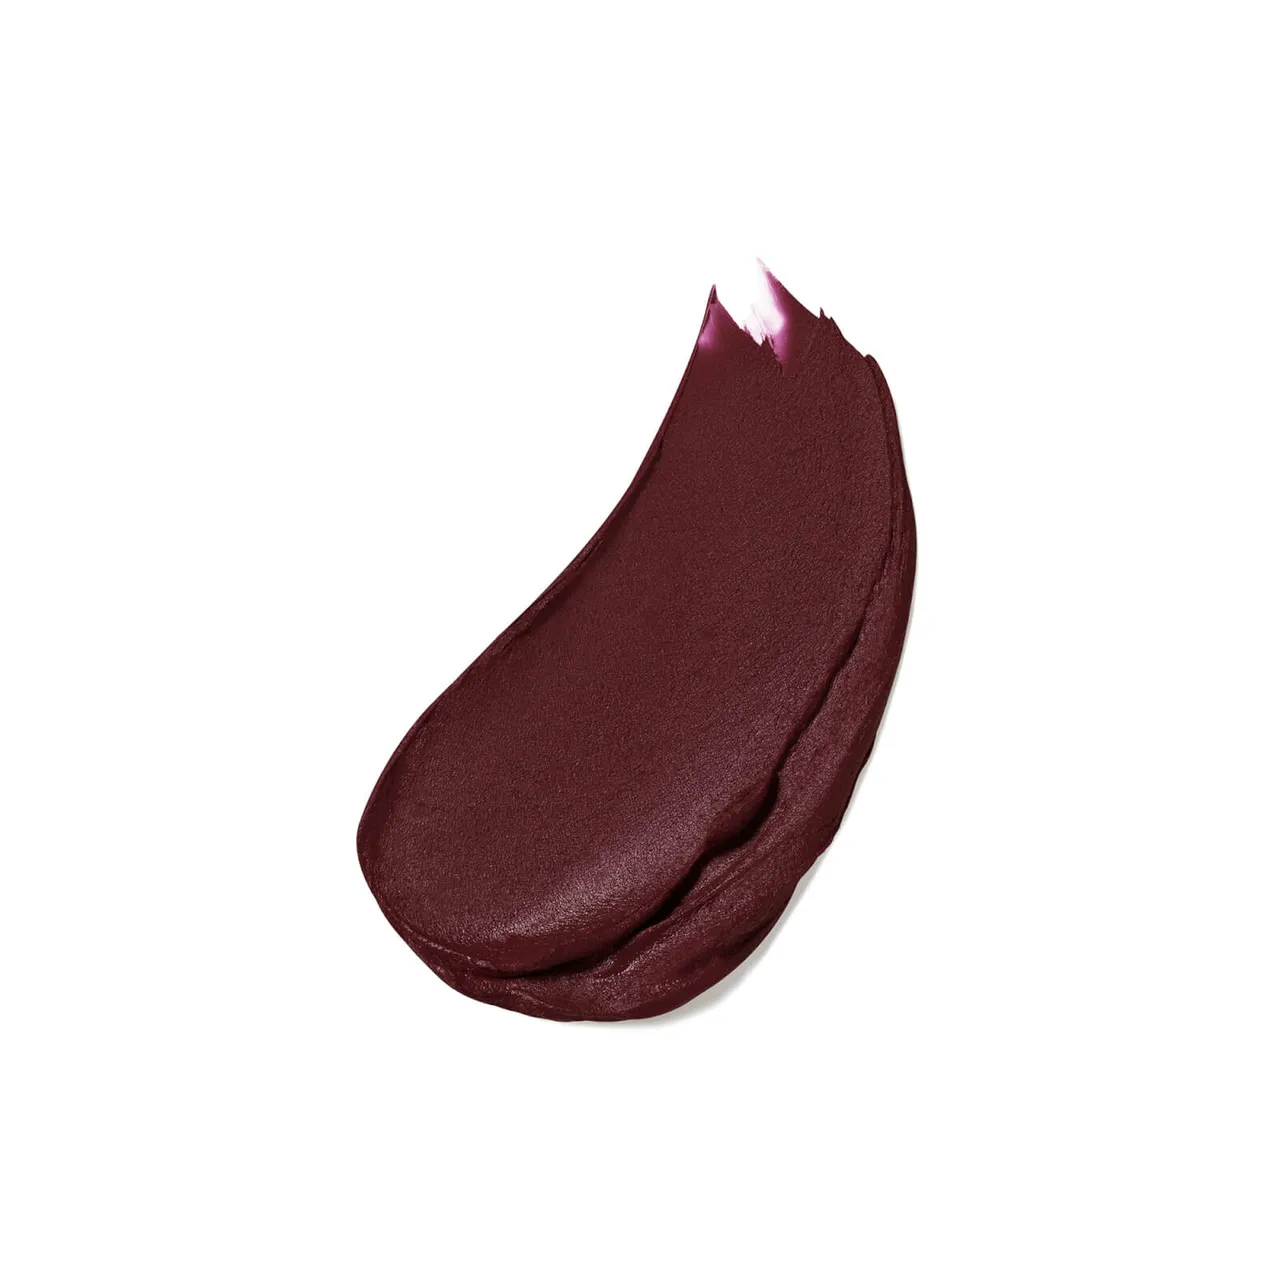 Estée Lauder Pure Colour Matte Lipstick 3.5g (Various Shades) - After Hours